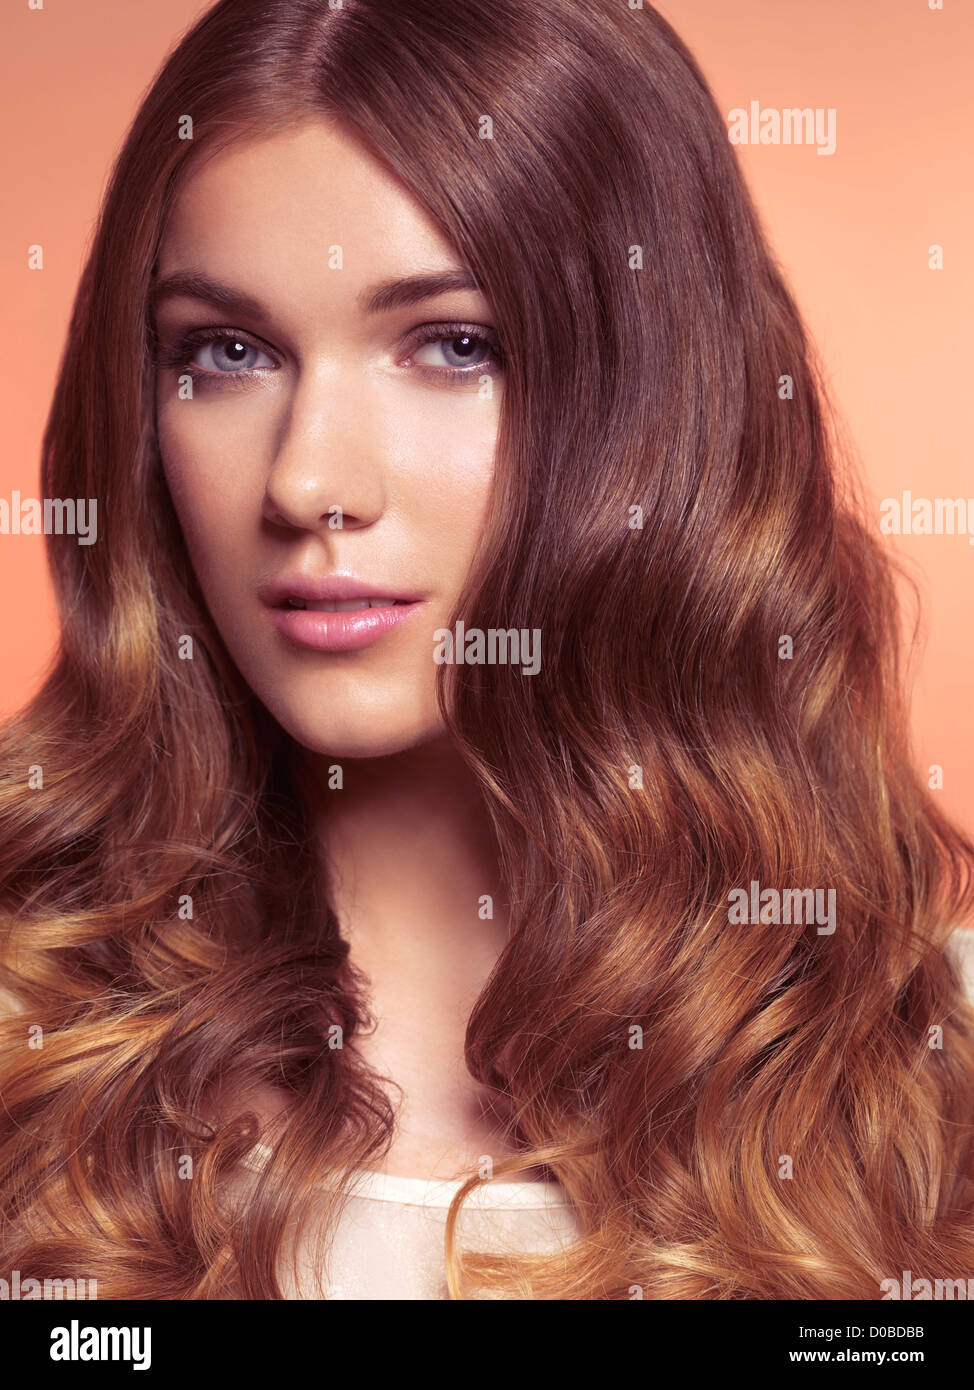 Licencia e impresiones en MaximImages.com - Retrato de la belleza de una mujer joven con el pelo largo y ondulado marrón hermoso Foto de stock